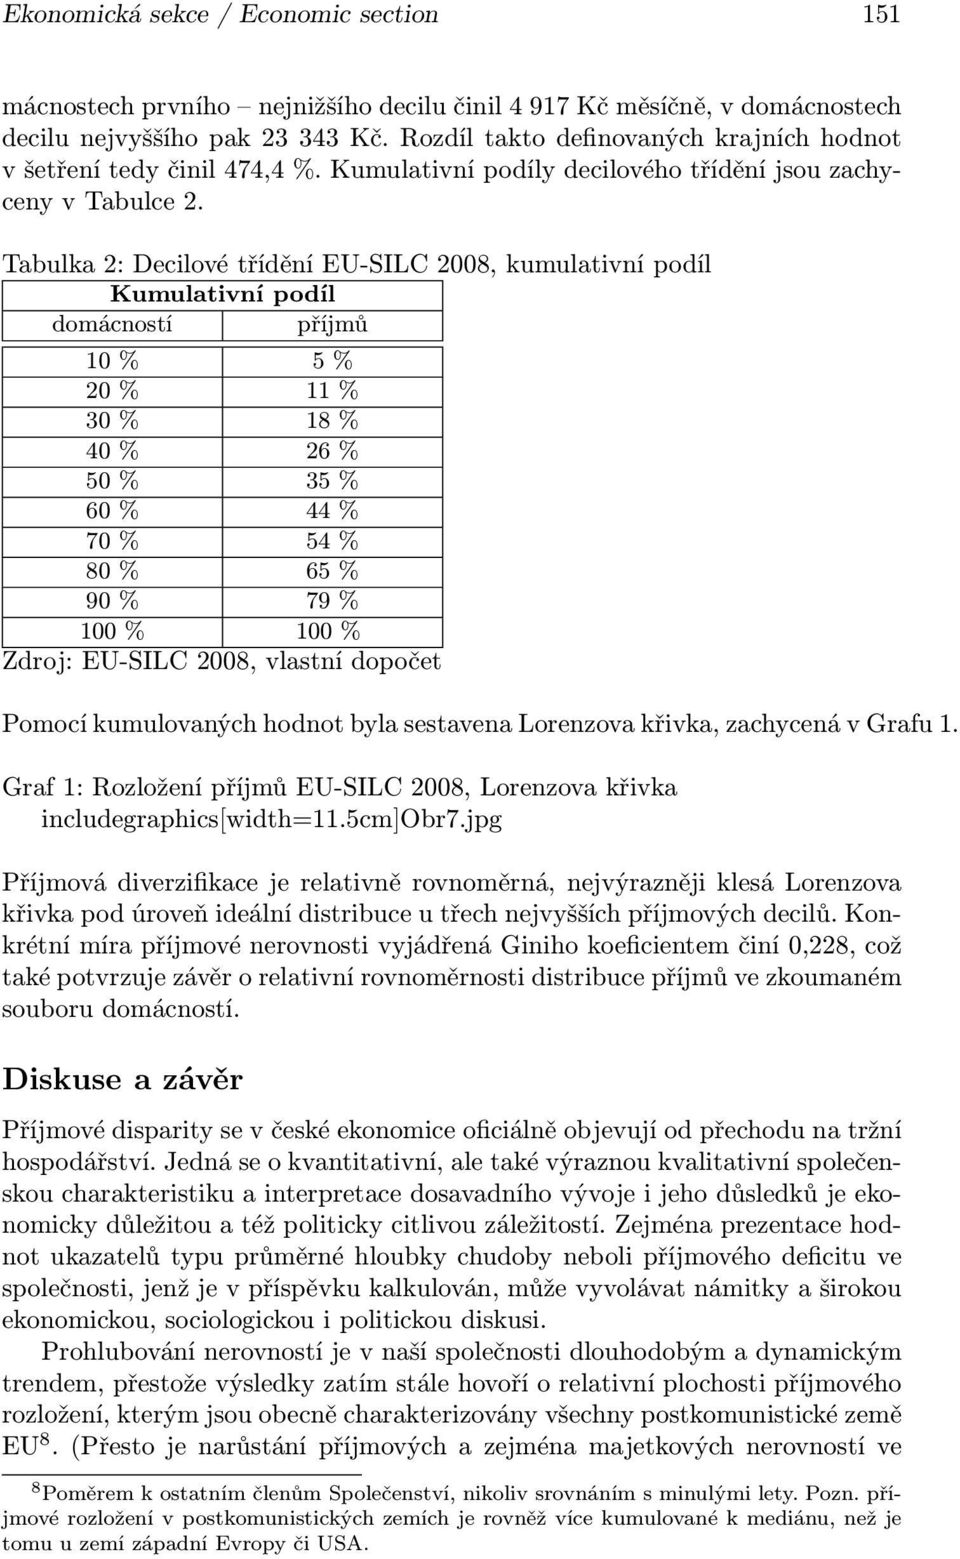 Tabulka 2: Decilové třídění EU-SILC 2008, kumulativní podíl Kumulativní podíl domácností příjmů 10 % 5 % 20 % 11 % 30 % 18 % 40 % 26 % 50 % 35 % 60 % 44 % 70 % 54 % 80 % 65 % 90 % 79 % 100 % 100 %